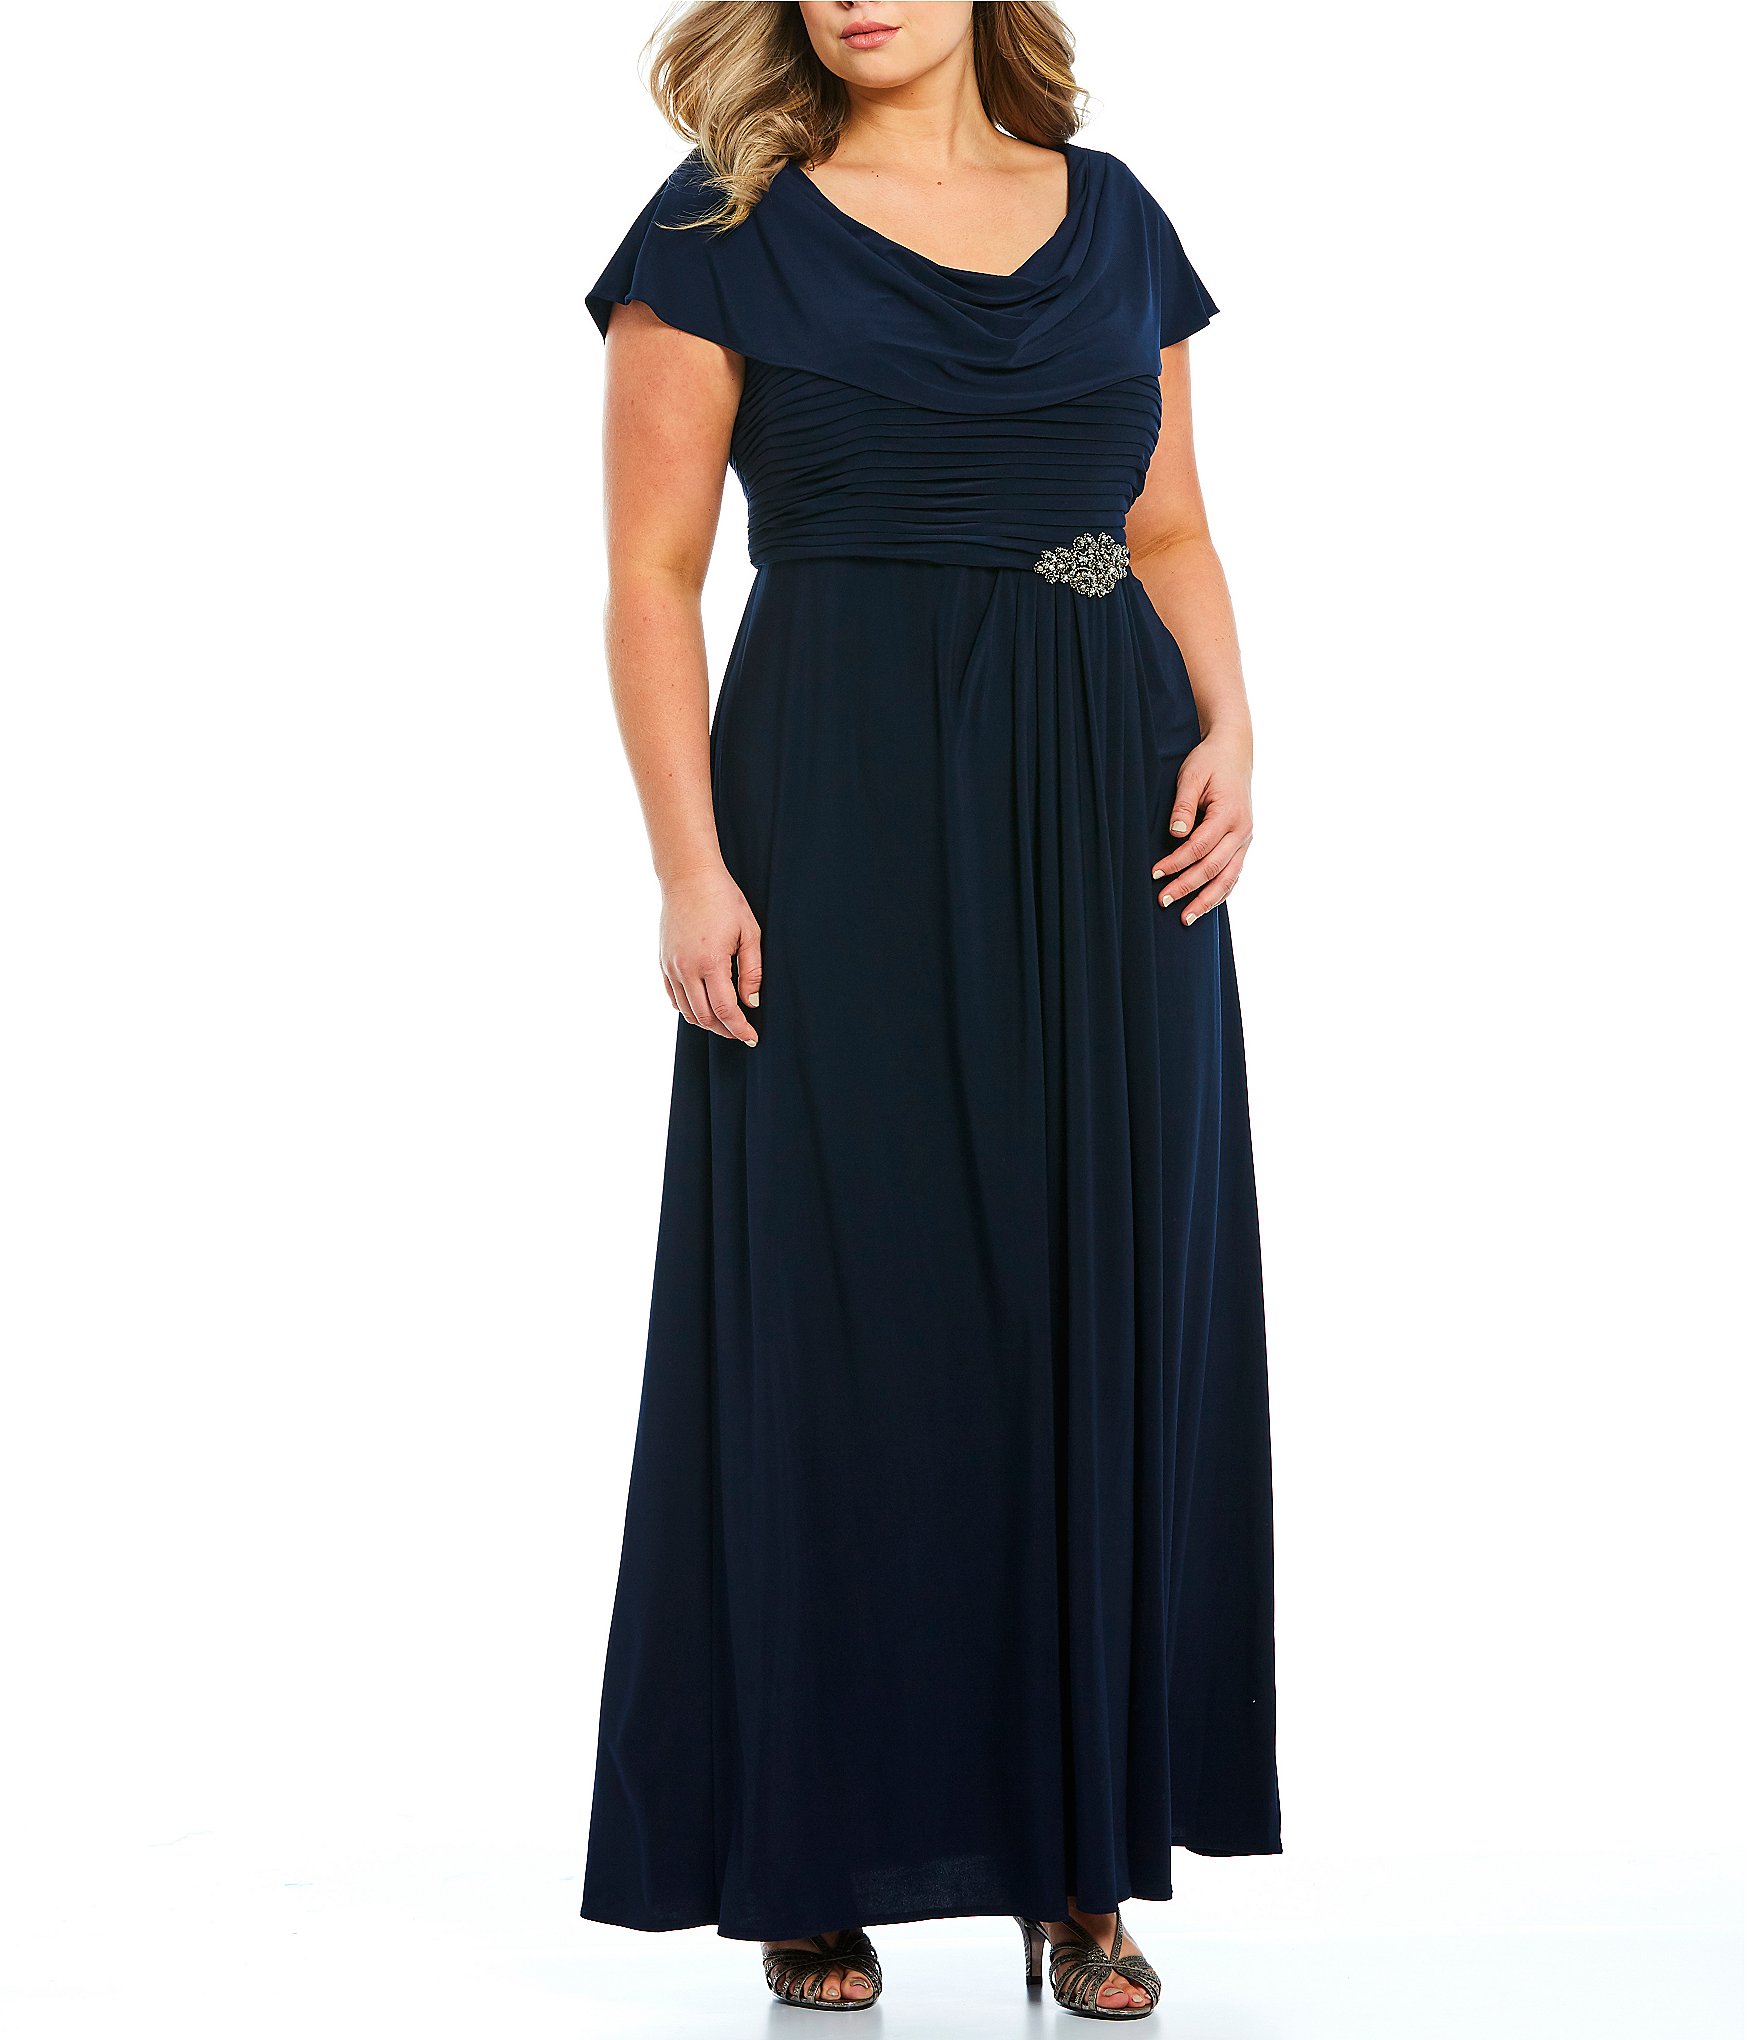 Blue Plus-Size Gowns ☀ Formal Dresses ...